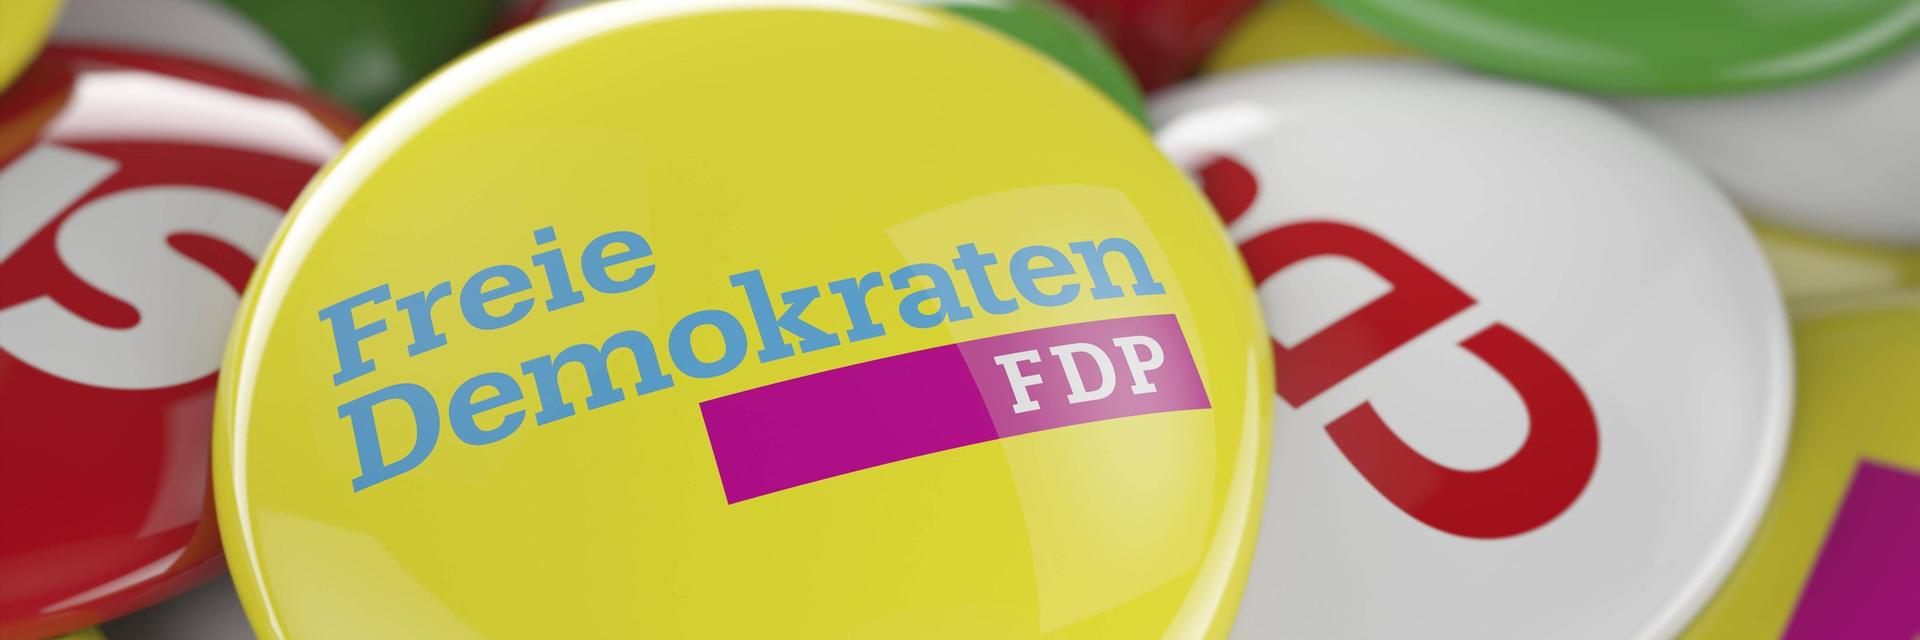 Ein FDP Button liegt auf den Buttons anderer deutscher Parteien.